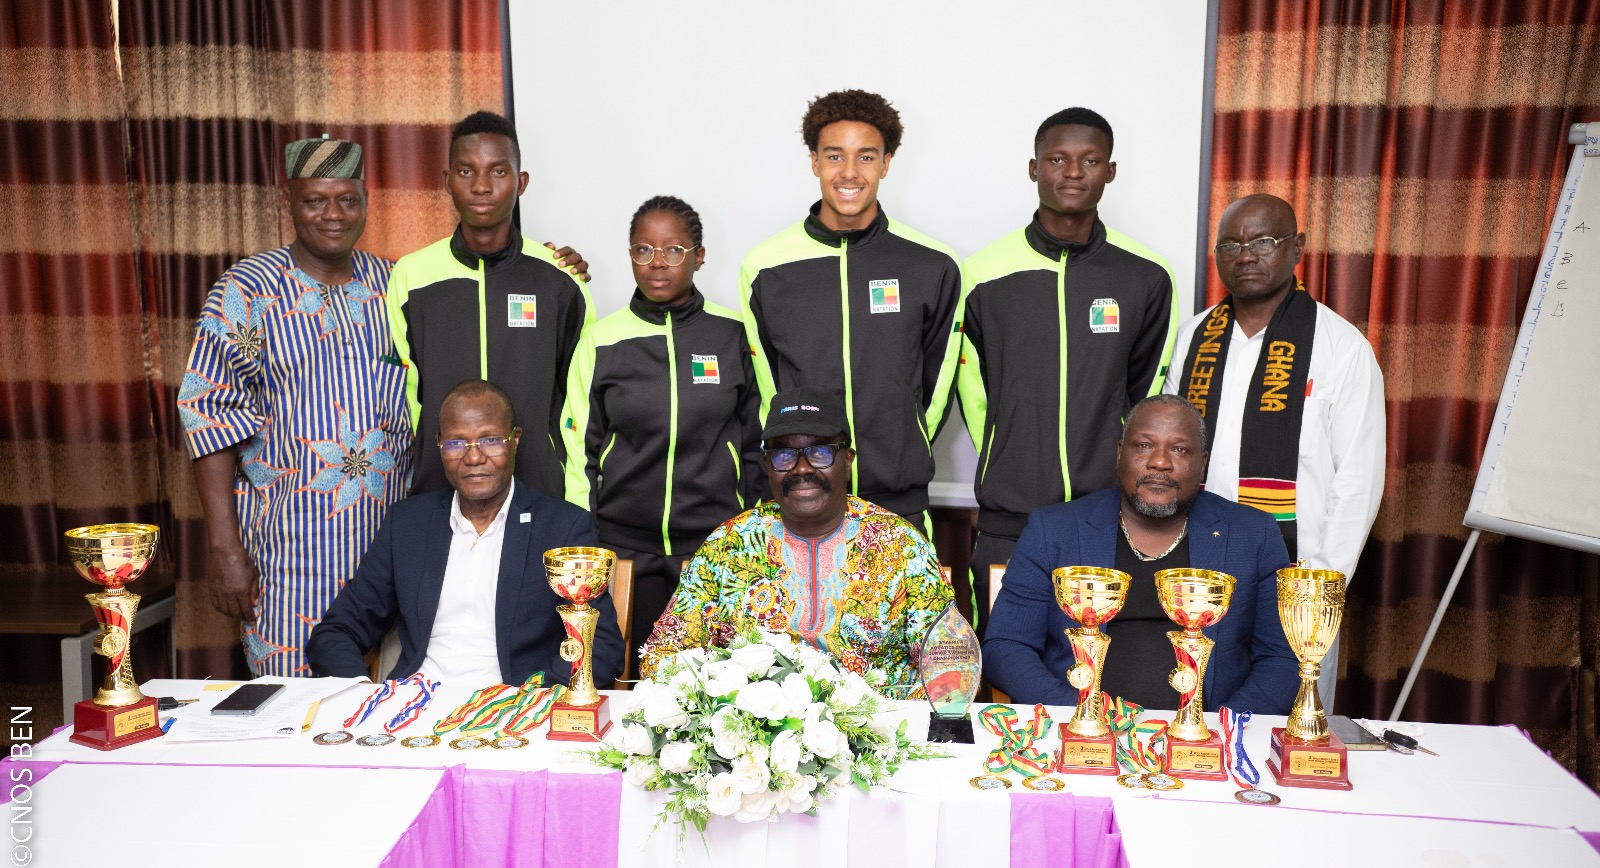 Lire la suite à propos de l’article Natation – 3e Championnats d’Afrique Juniors Zone 2: Les nageurs et les responsables reçoivent des félicitations de la part du président du Cnos-Ben